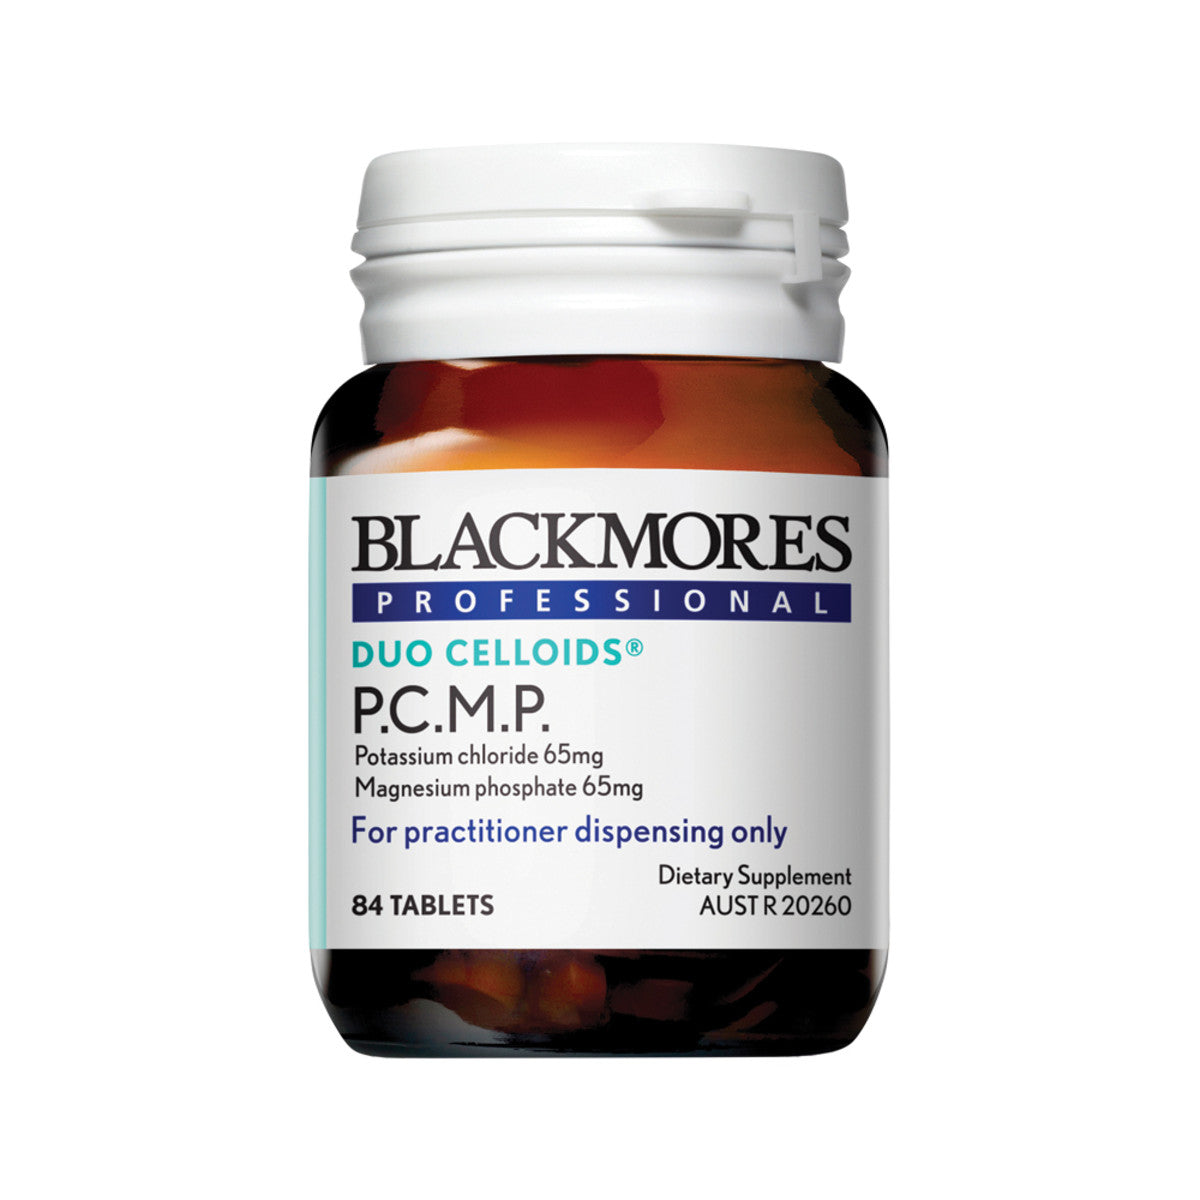 Blackmores - Prof P.C.M.P.